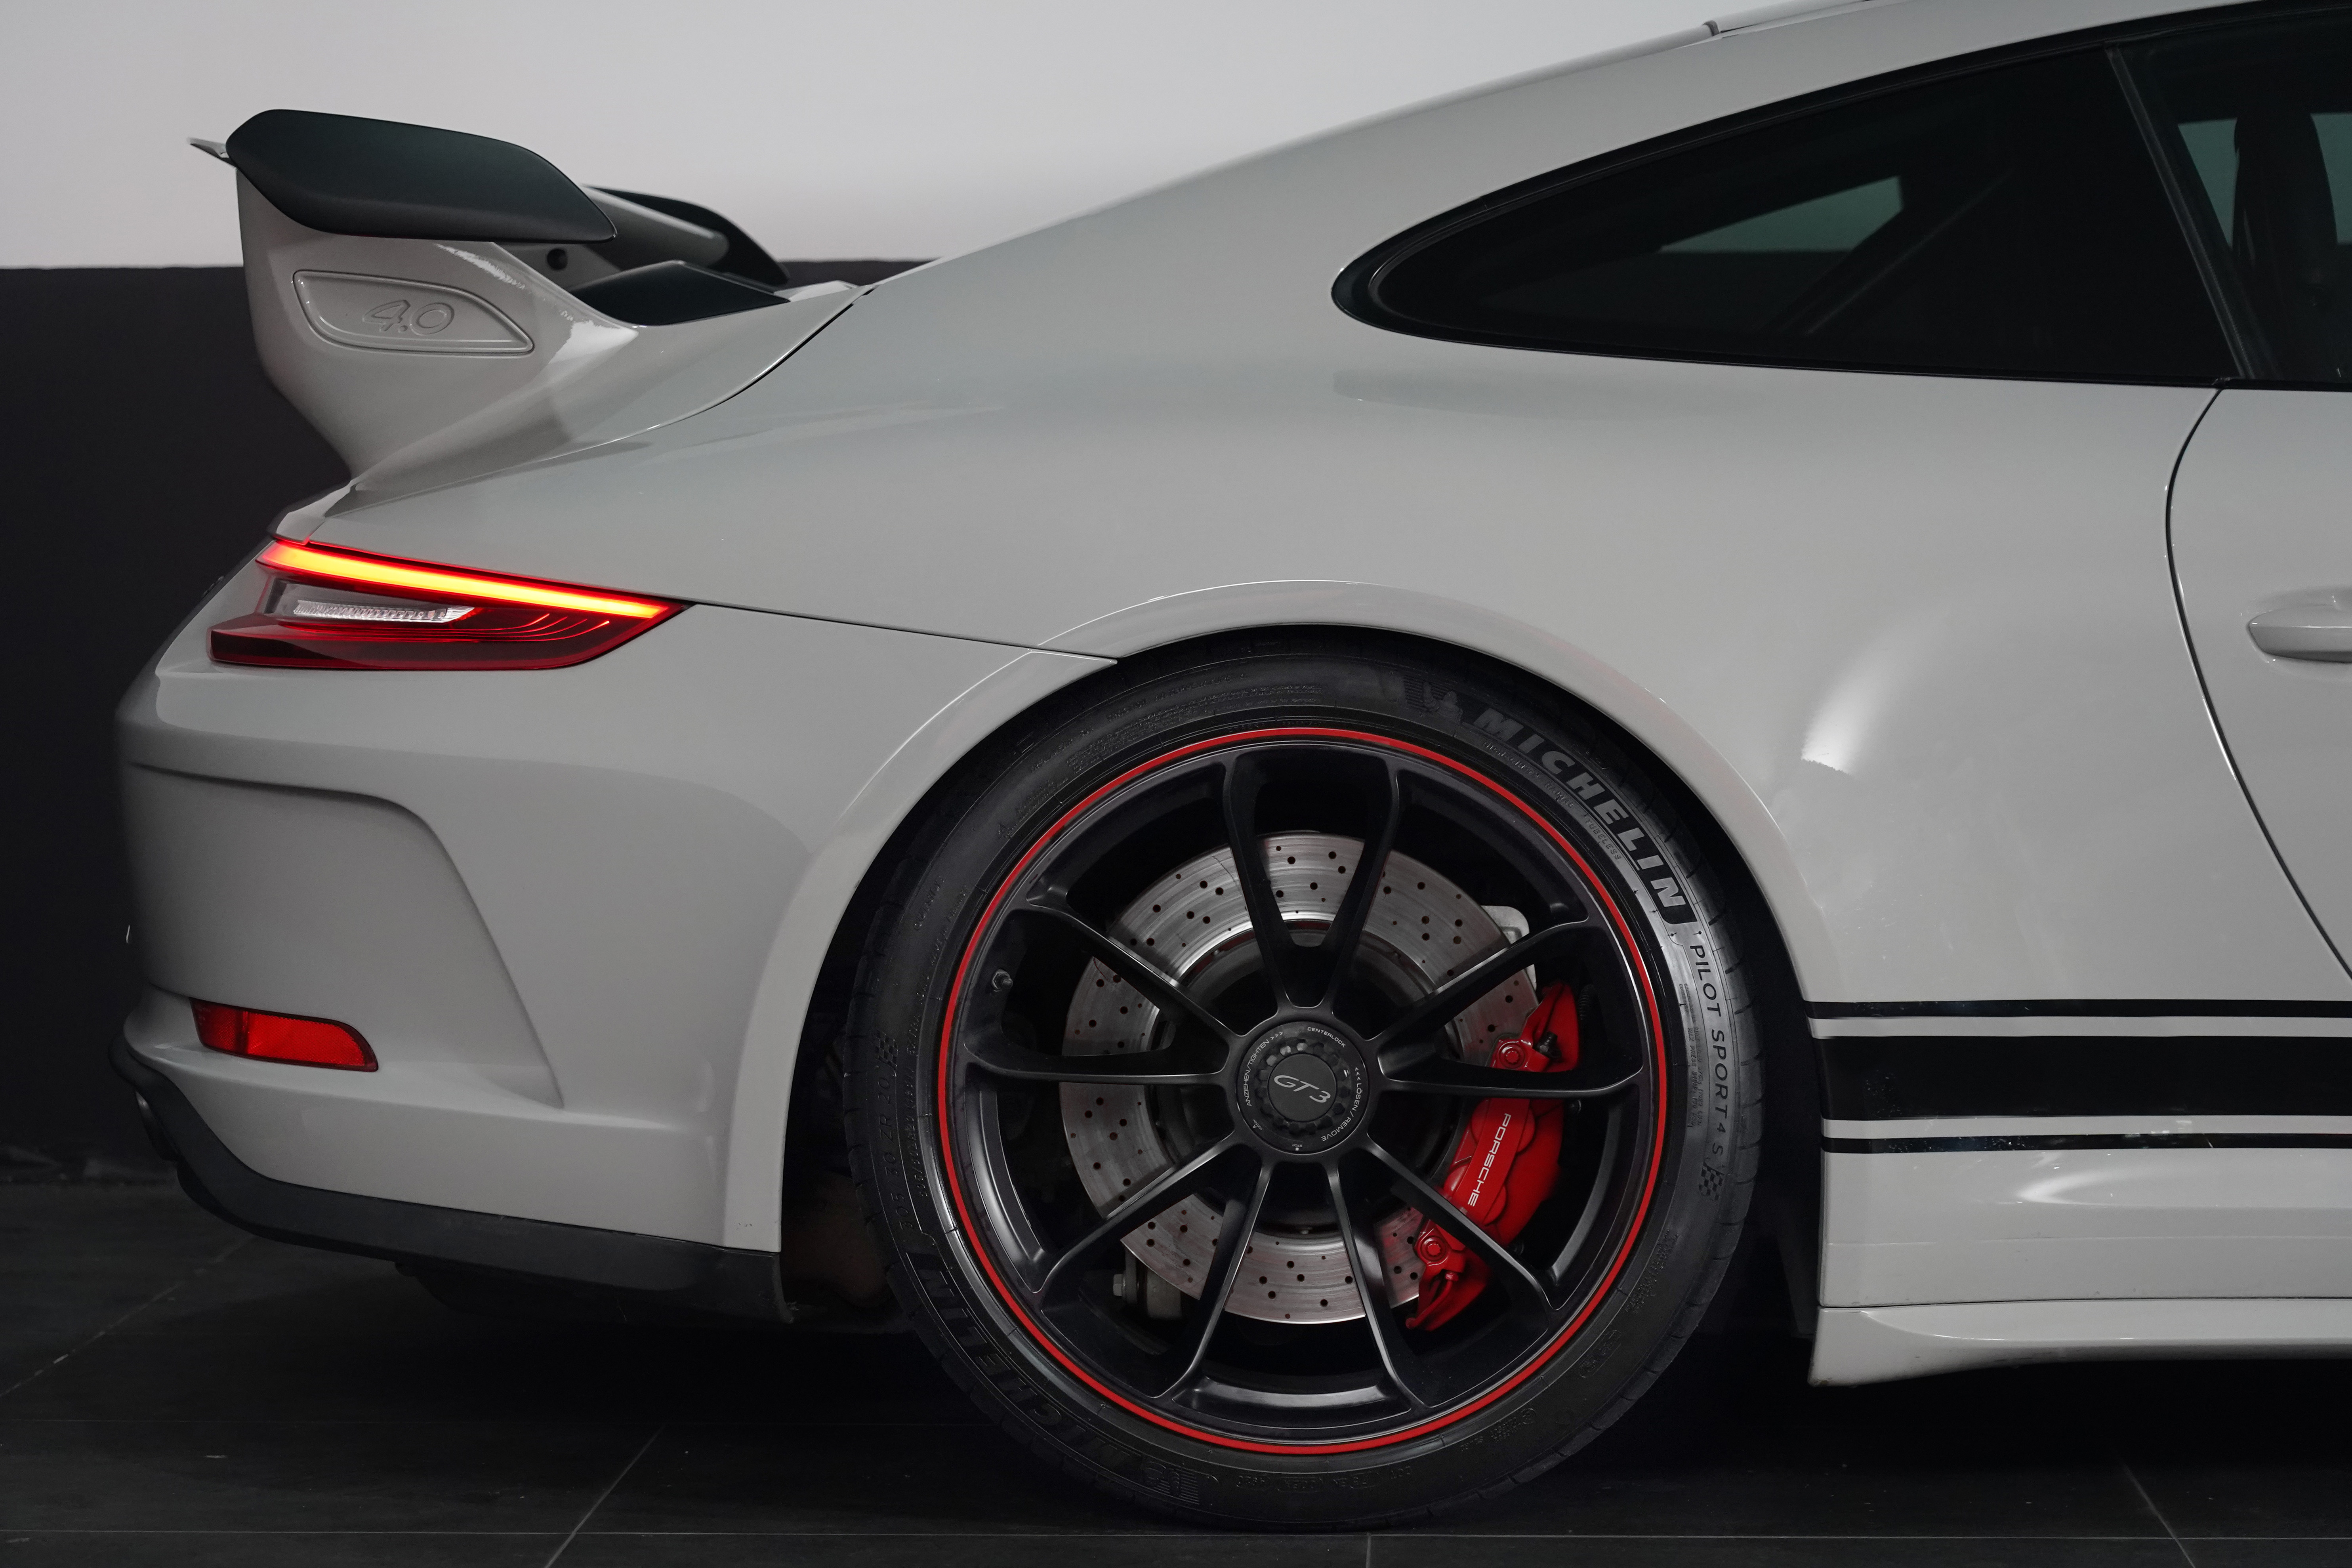 2018 Porsche 911 Porsche 911 Gt3 7 Sp Auto Dual Clutch Gt3 Clubsport Coupe Image 6